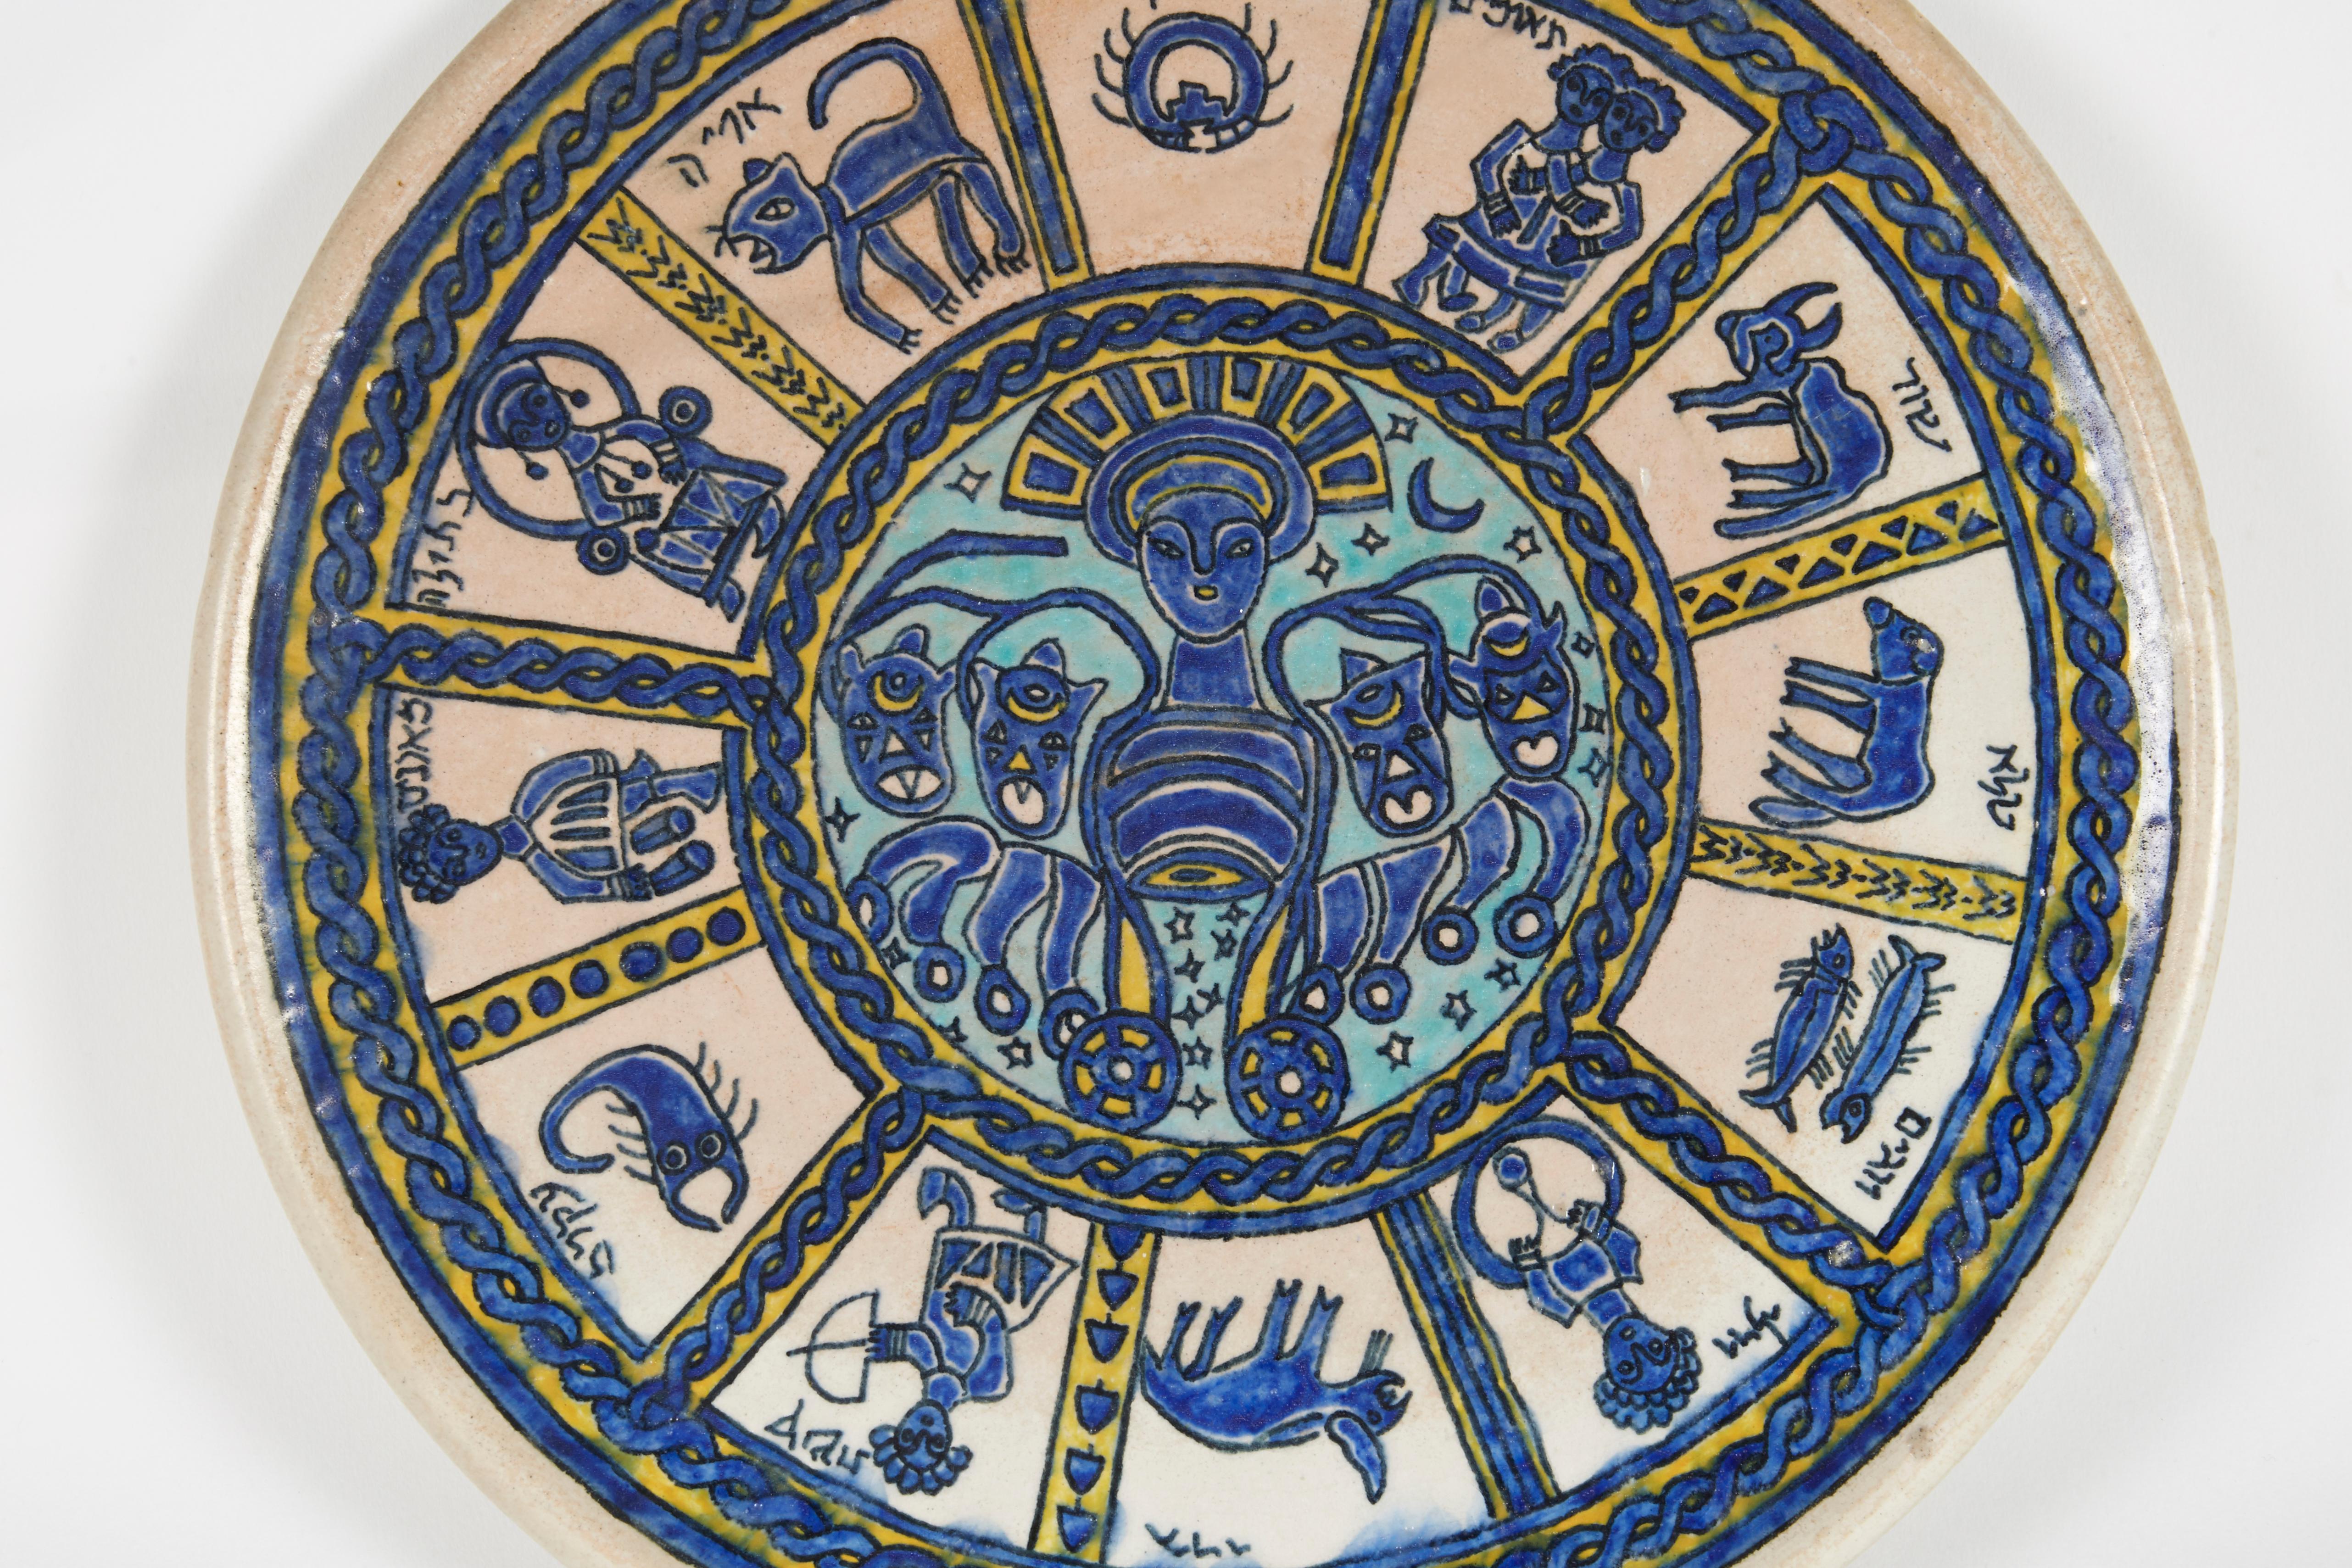 Extrêmement rare assiette en poterie arménienne représentant le sol en mosaïque de l'ancienne synagogue de Beit Alpha en Israël, vers 1920.
L'ancienne communauté arménienne de Jérusalem a vu son nombre augmenter considérablement lorsque les